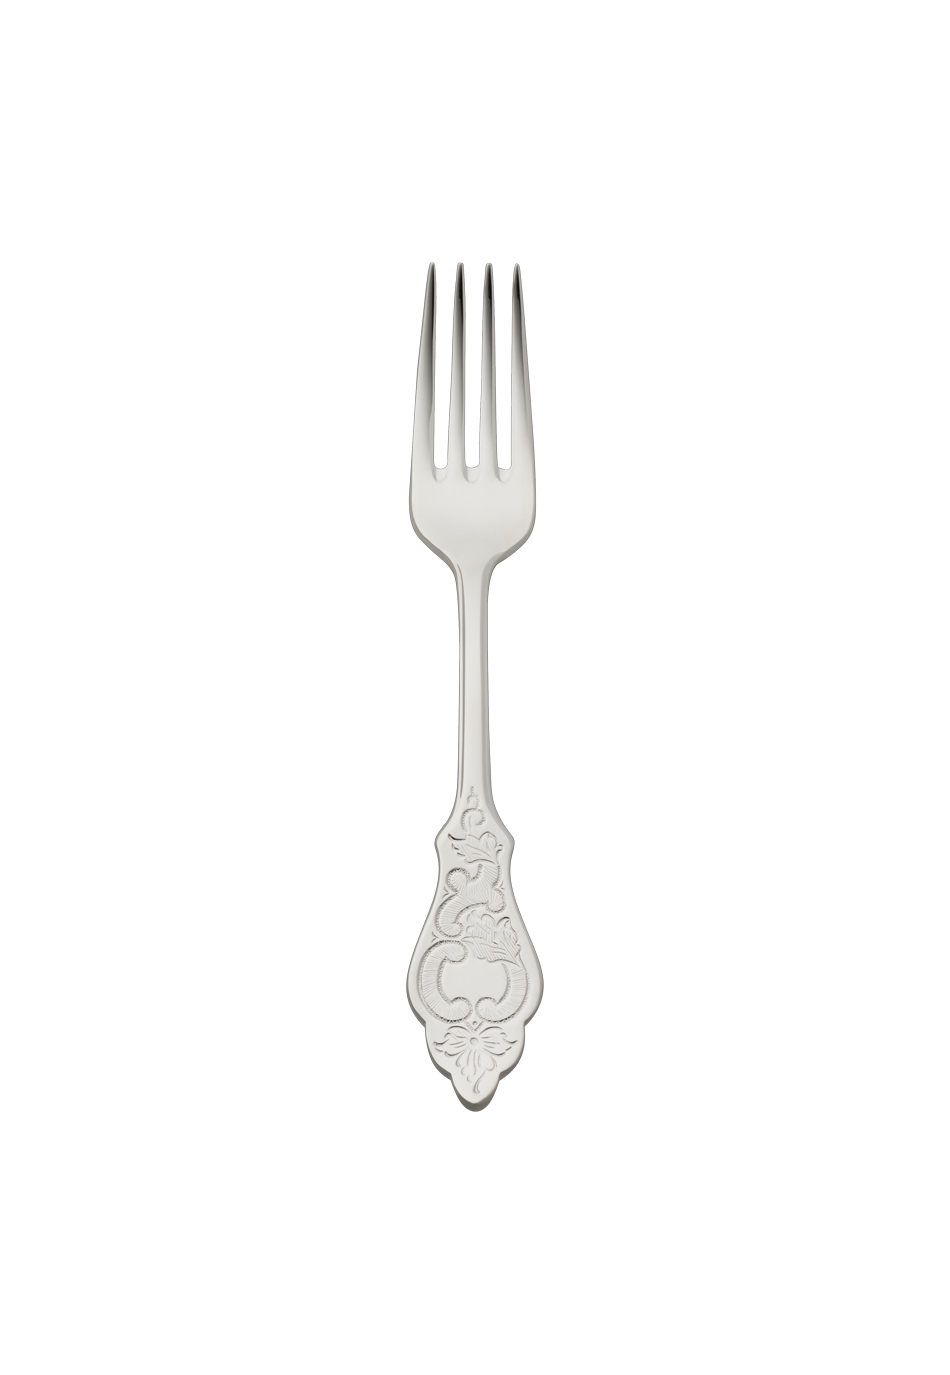 Ostfriesen Dessert Fork (18/8 stainless steel)